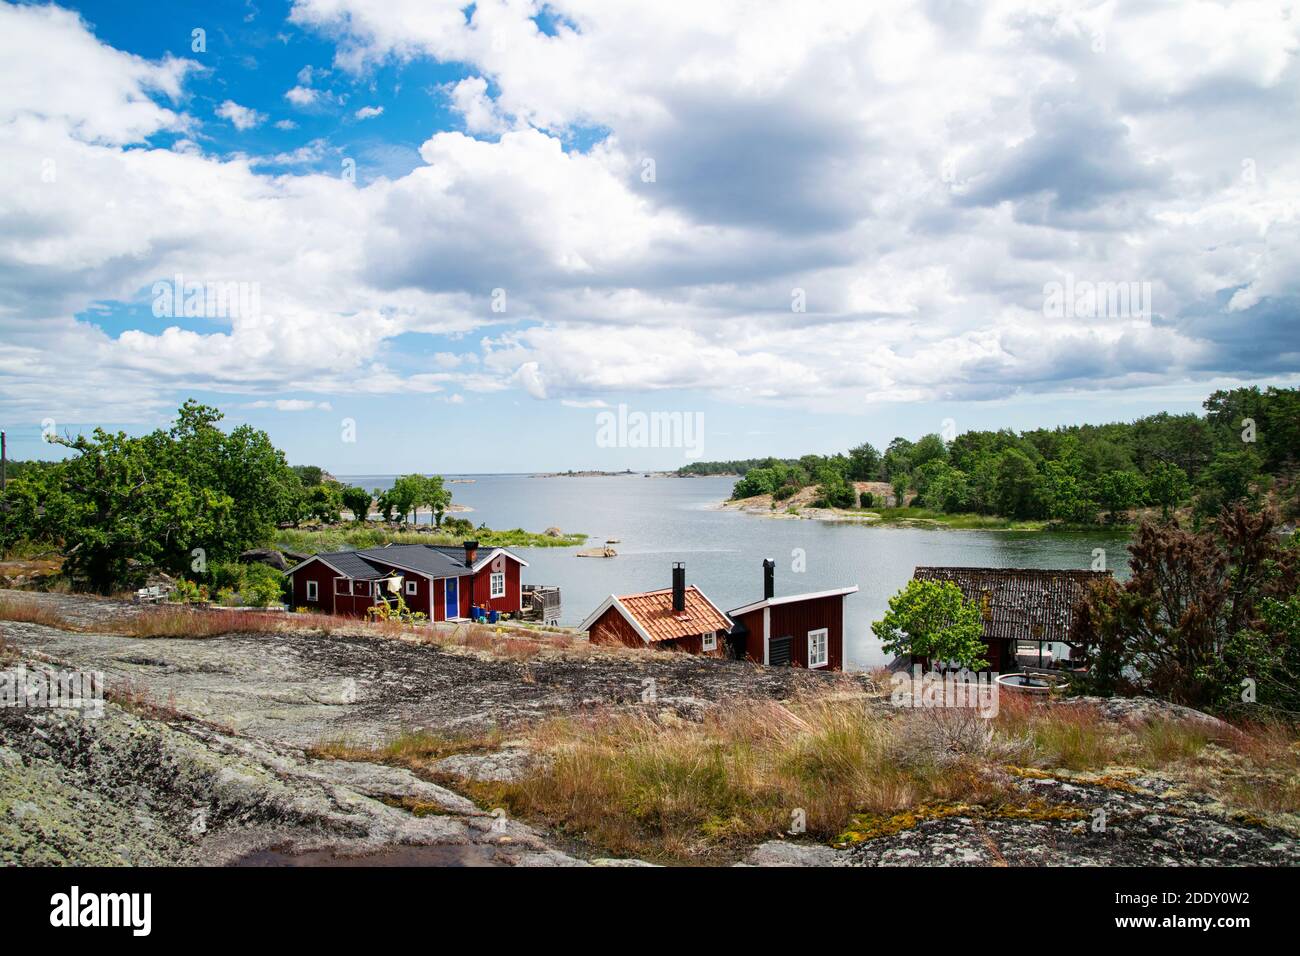 Schöner Sommertag im Archipel. Eine sehr malerische Aussicht mit roten Sommerferienhäusern direkt am Meer auf der Insel. Foto aufgenommen in Schweden. Stockfoto